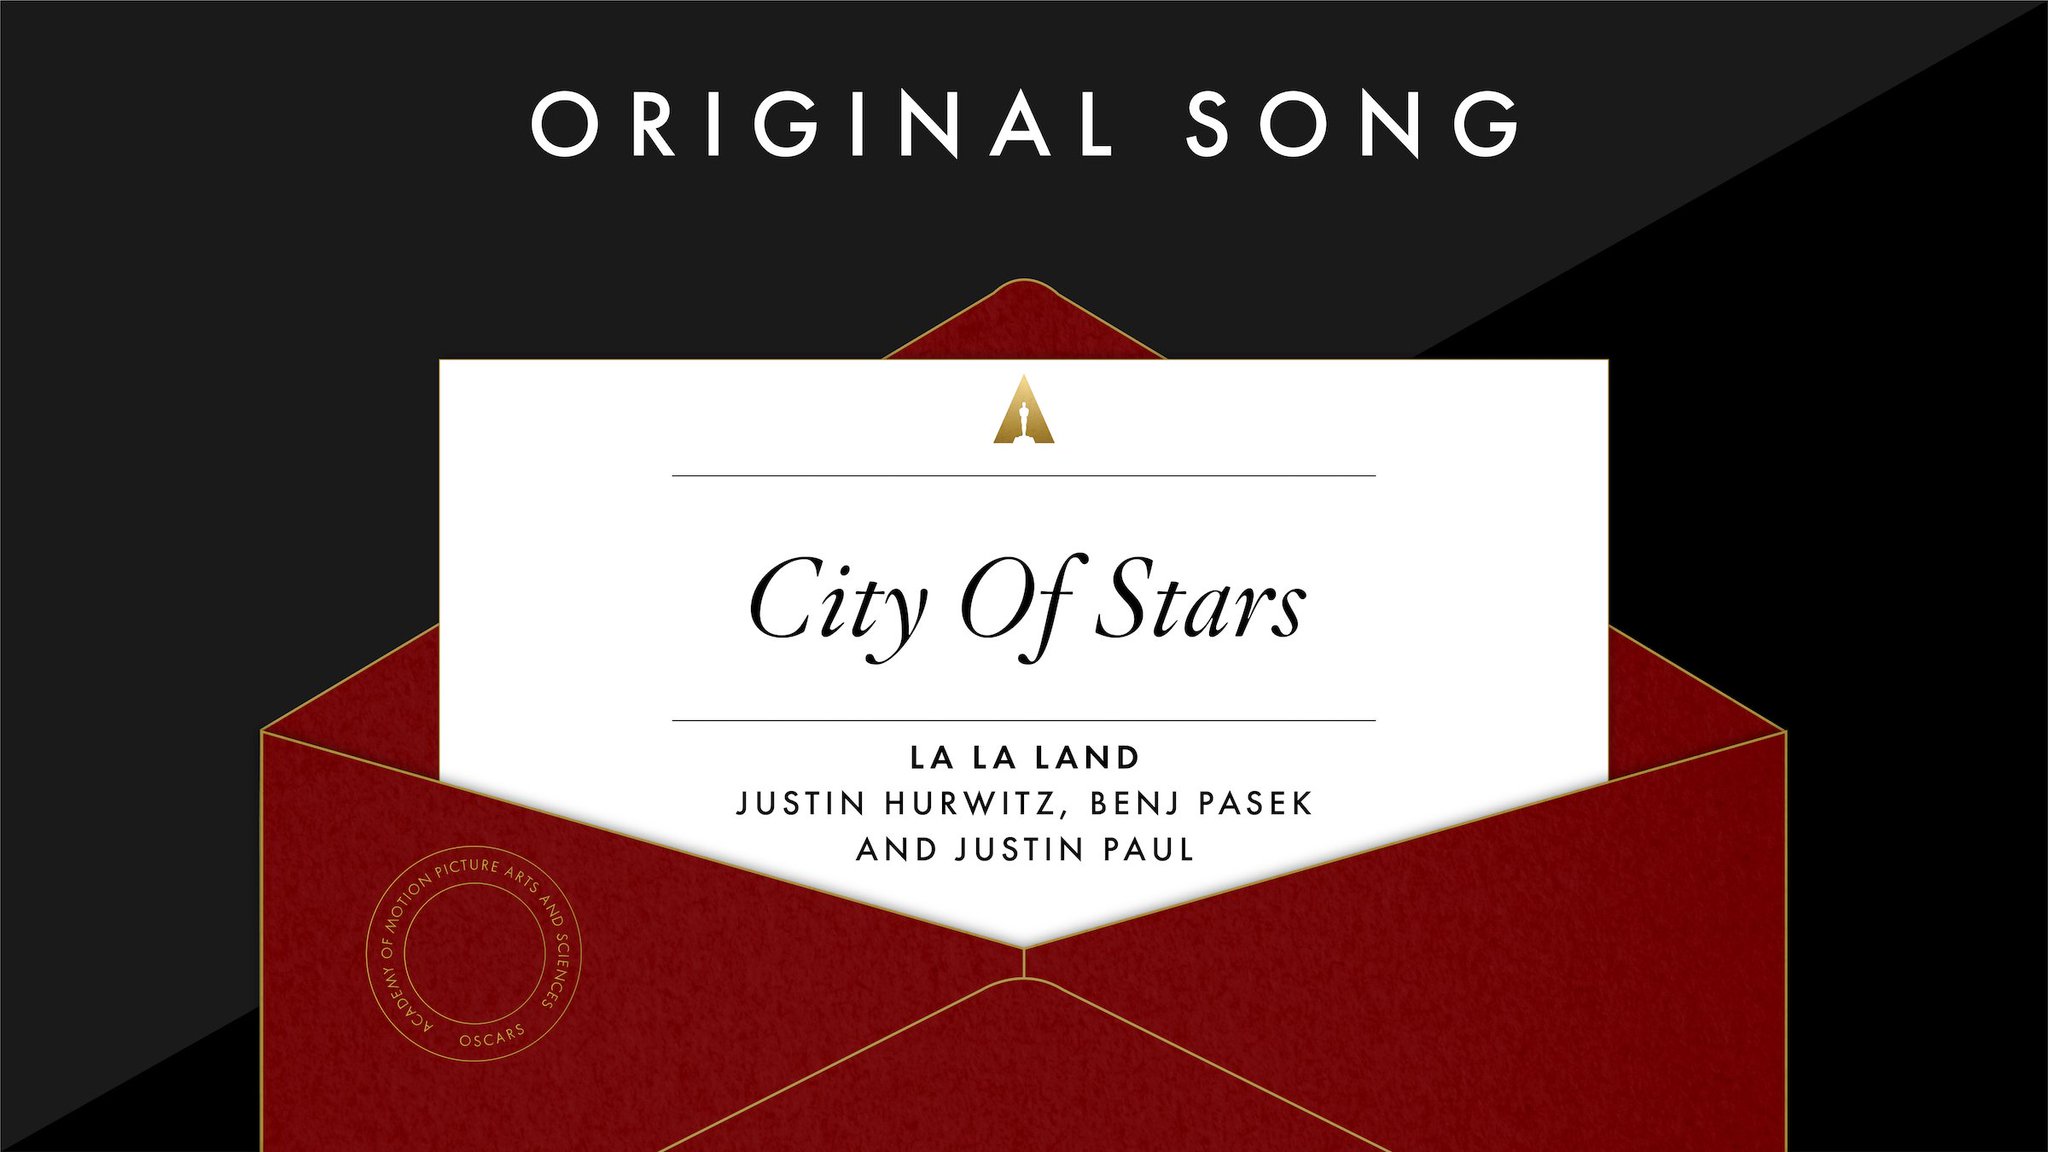 Lagu Asli Terbaik “City Stars” La La Land – Justin Hurwitz Lirik oleh Benj Pasek dan Justin Paul